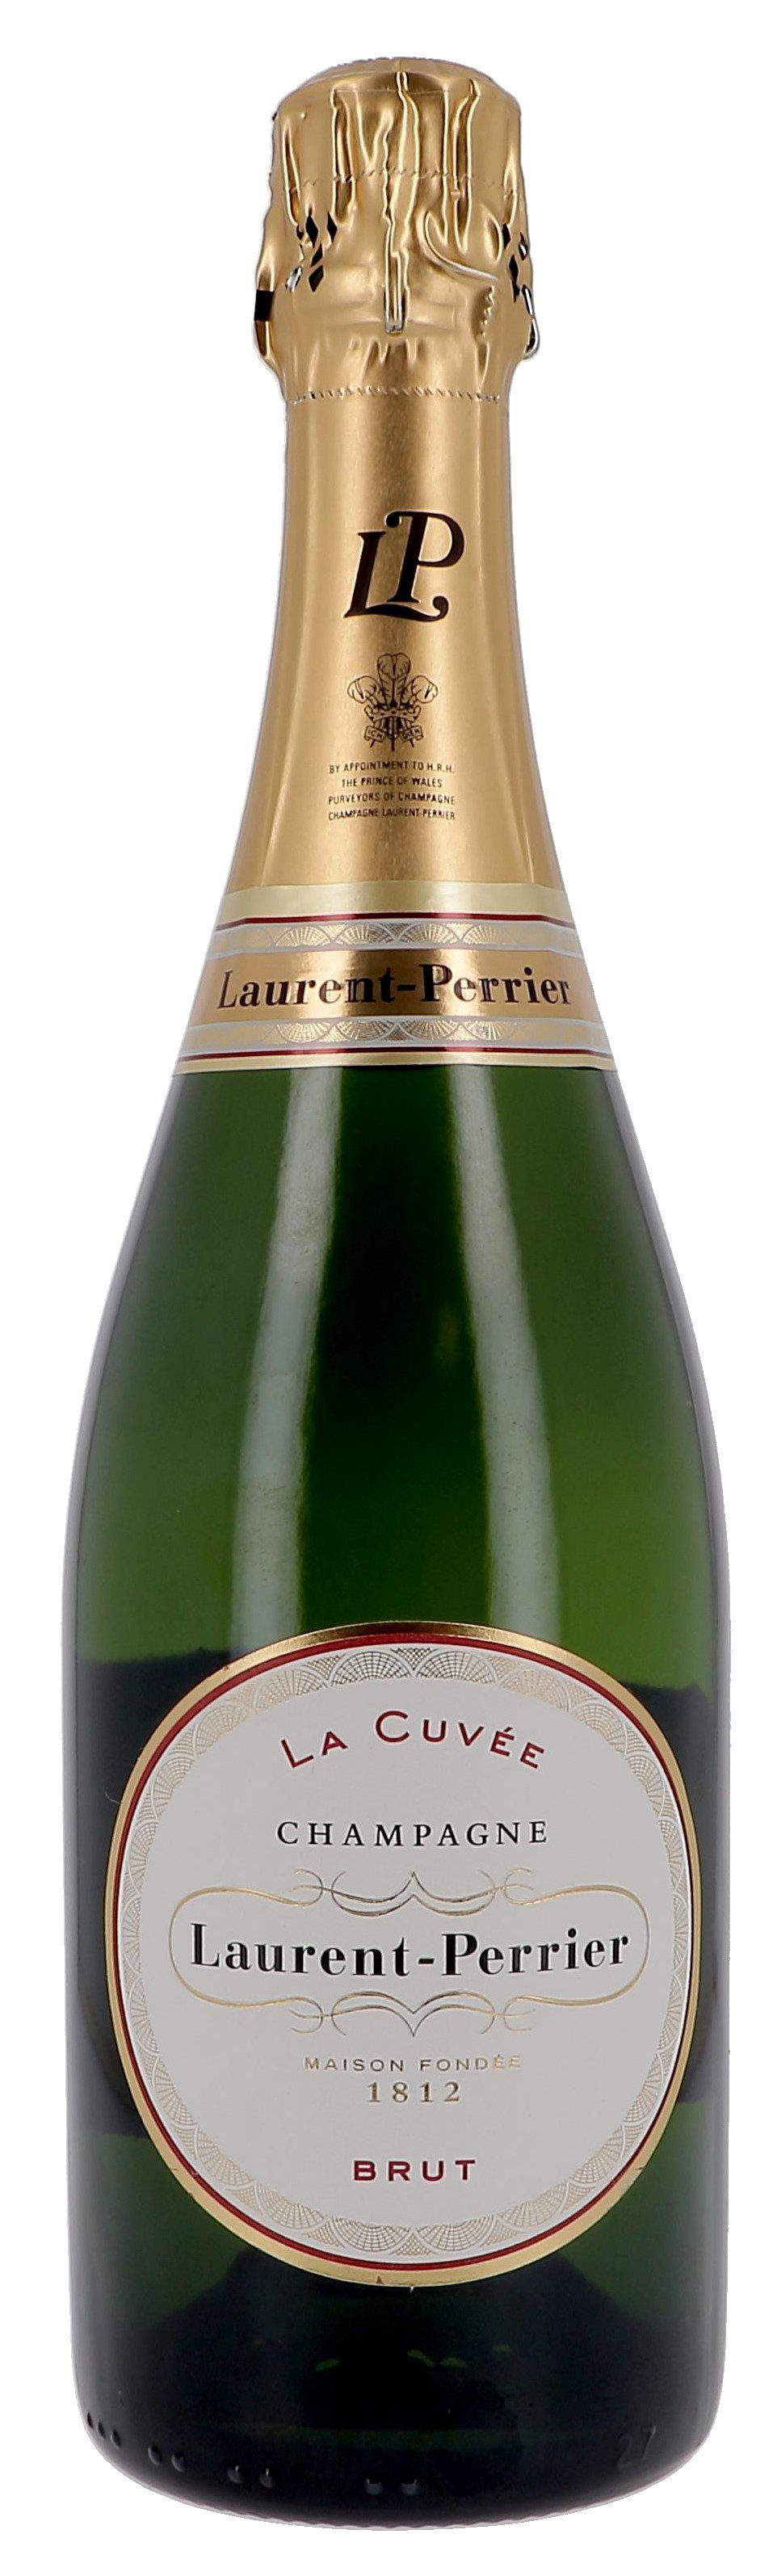 Champagne Laurent Perrier La Cuvée 75cl Brut (Champagne)